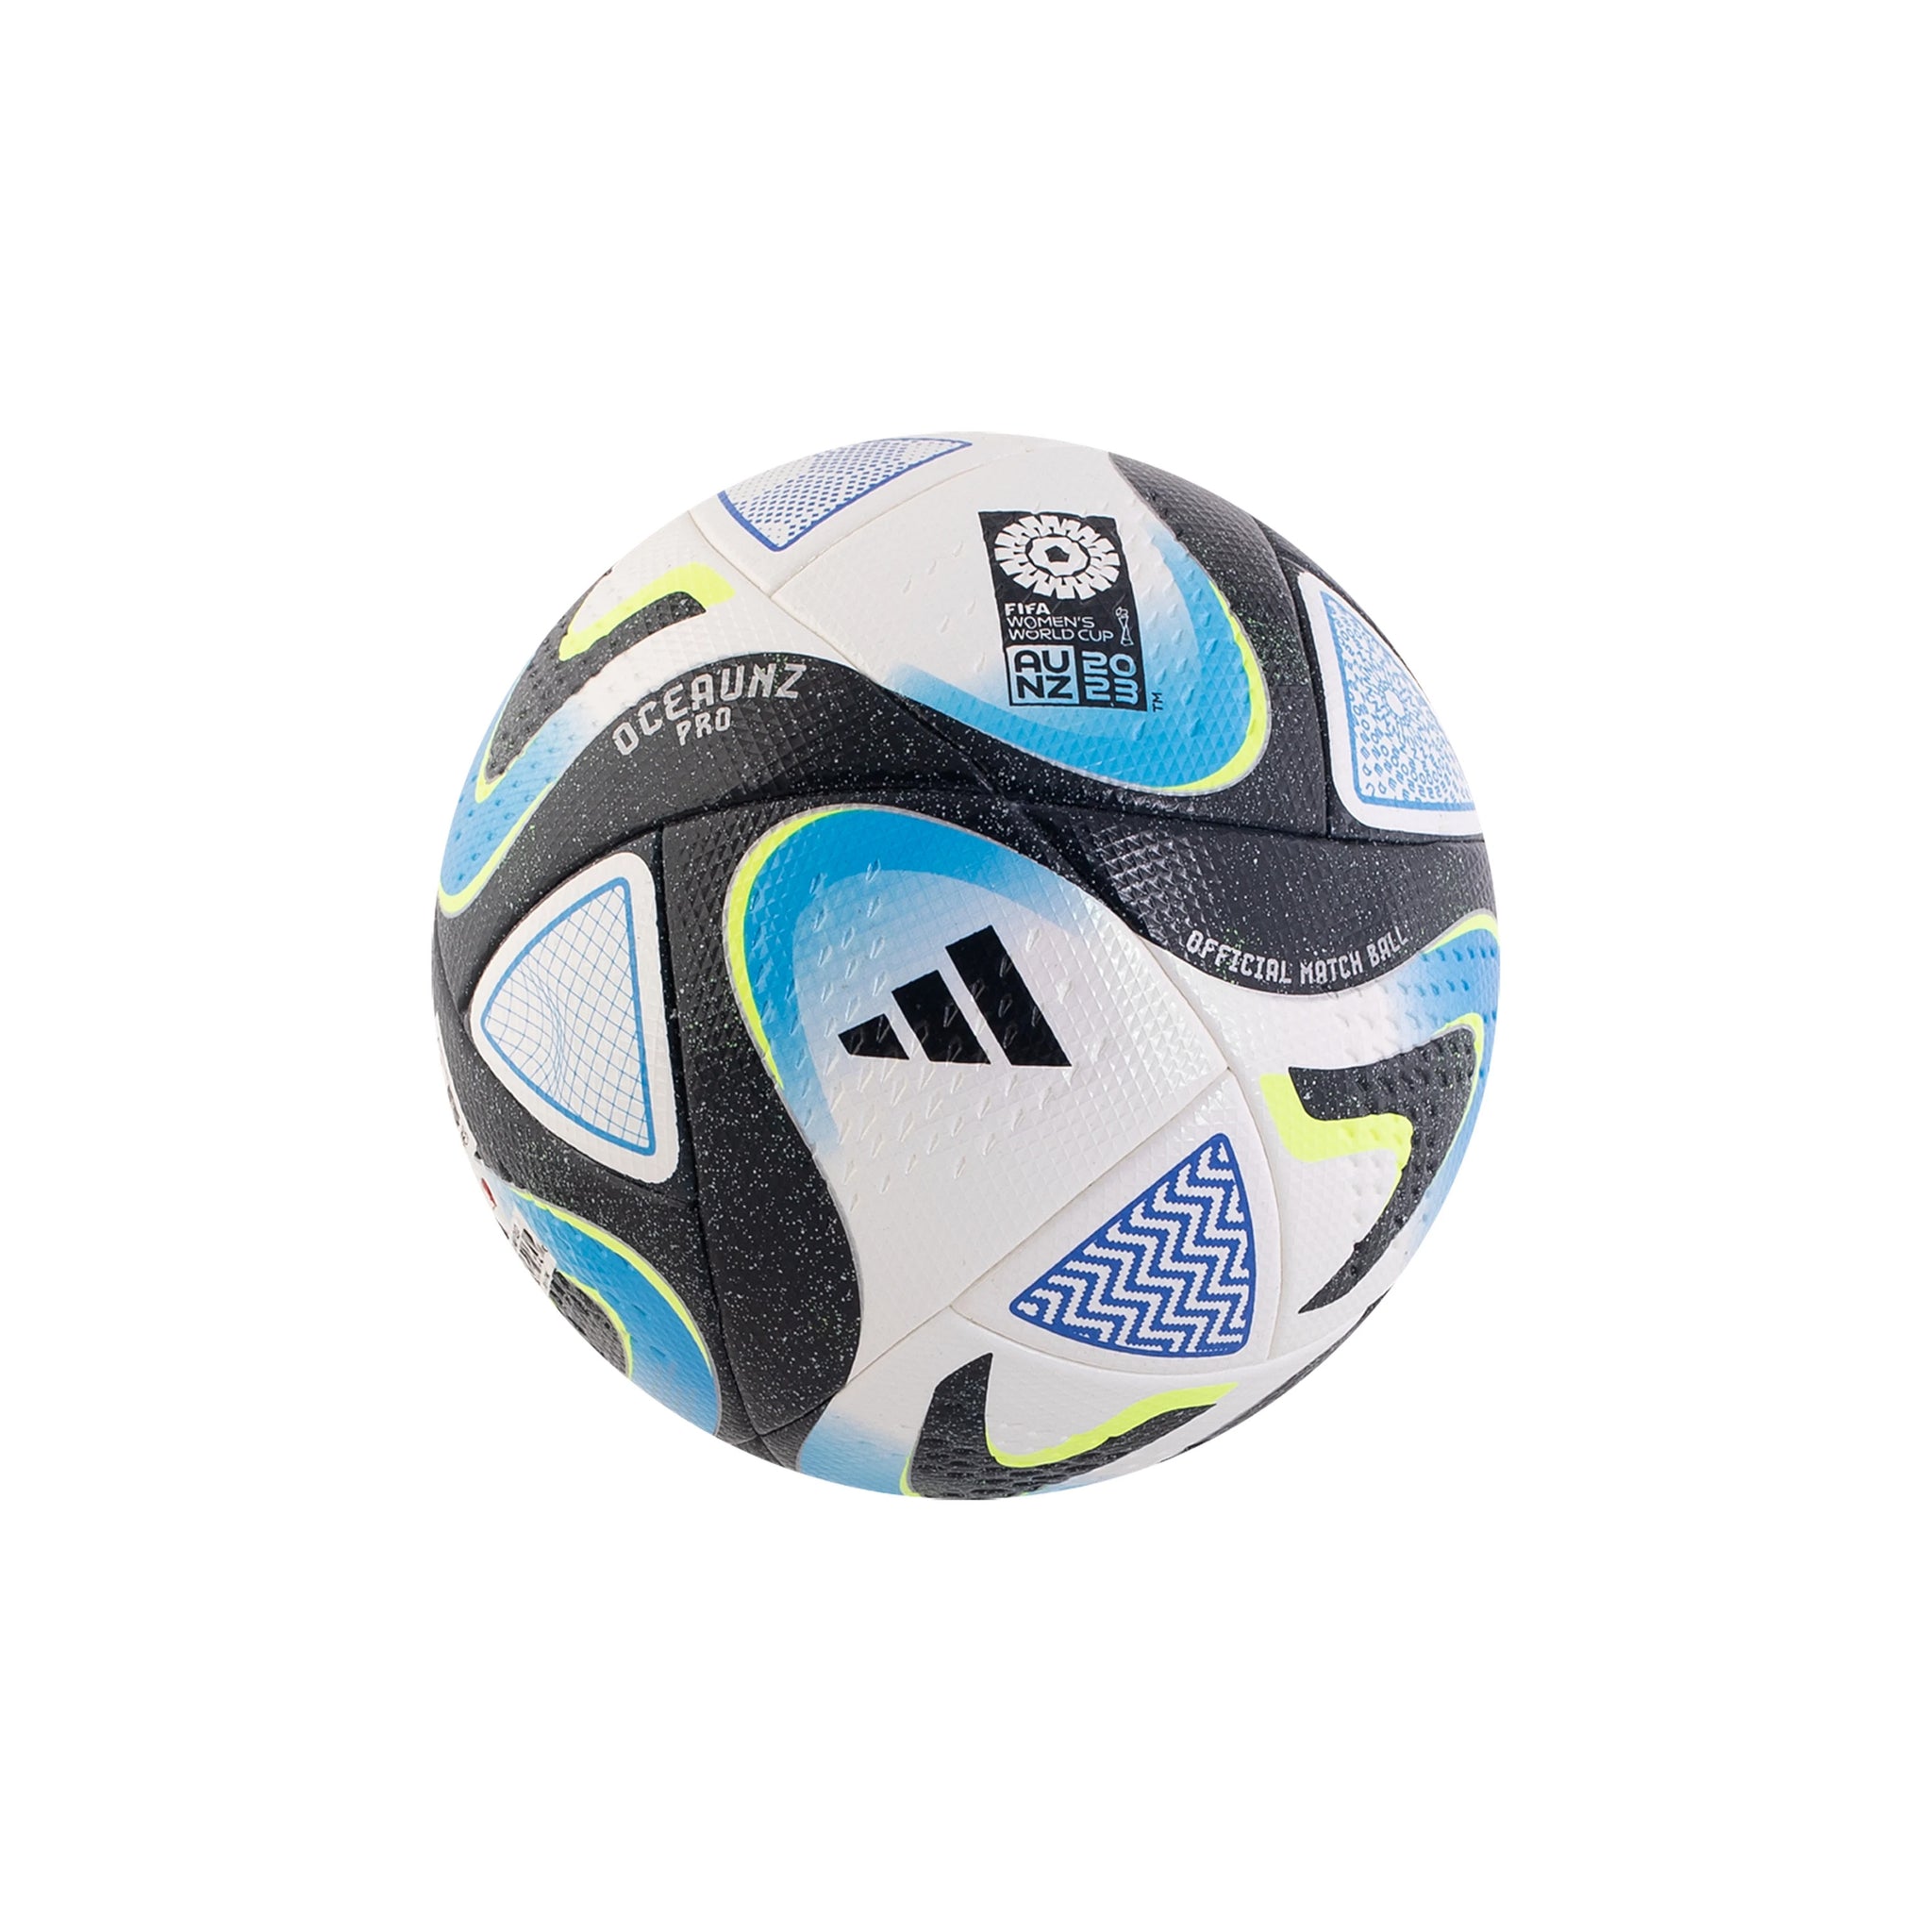 ADIDAS Oceaunz FIFA Women’s World Cup 2023 Official Match Ball